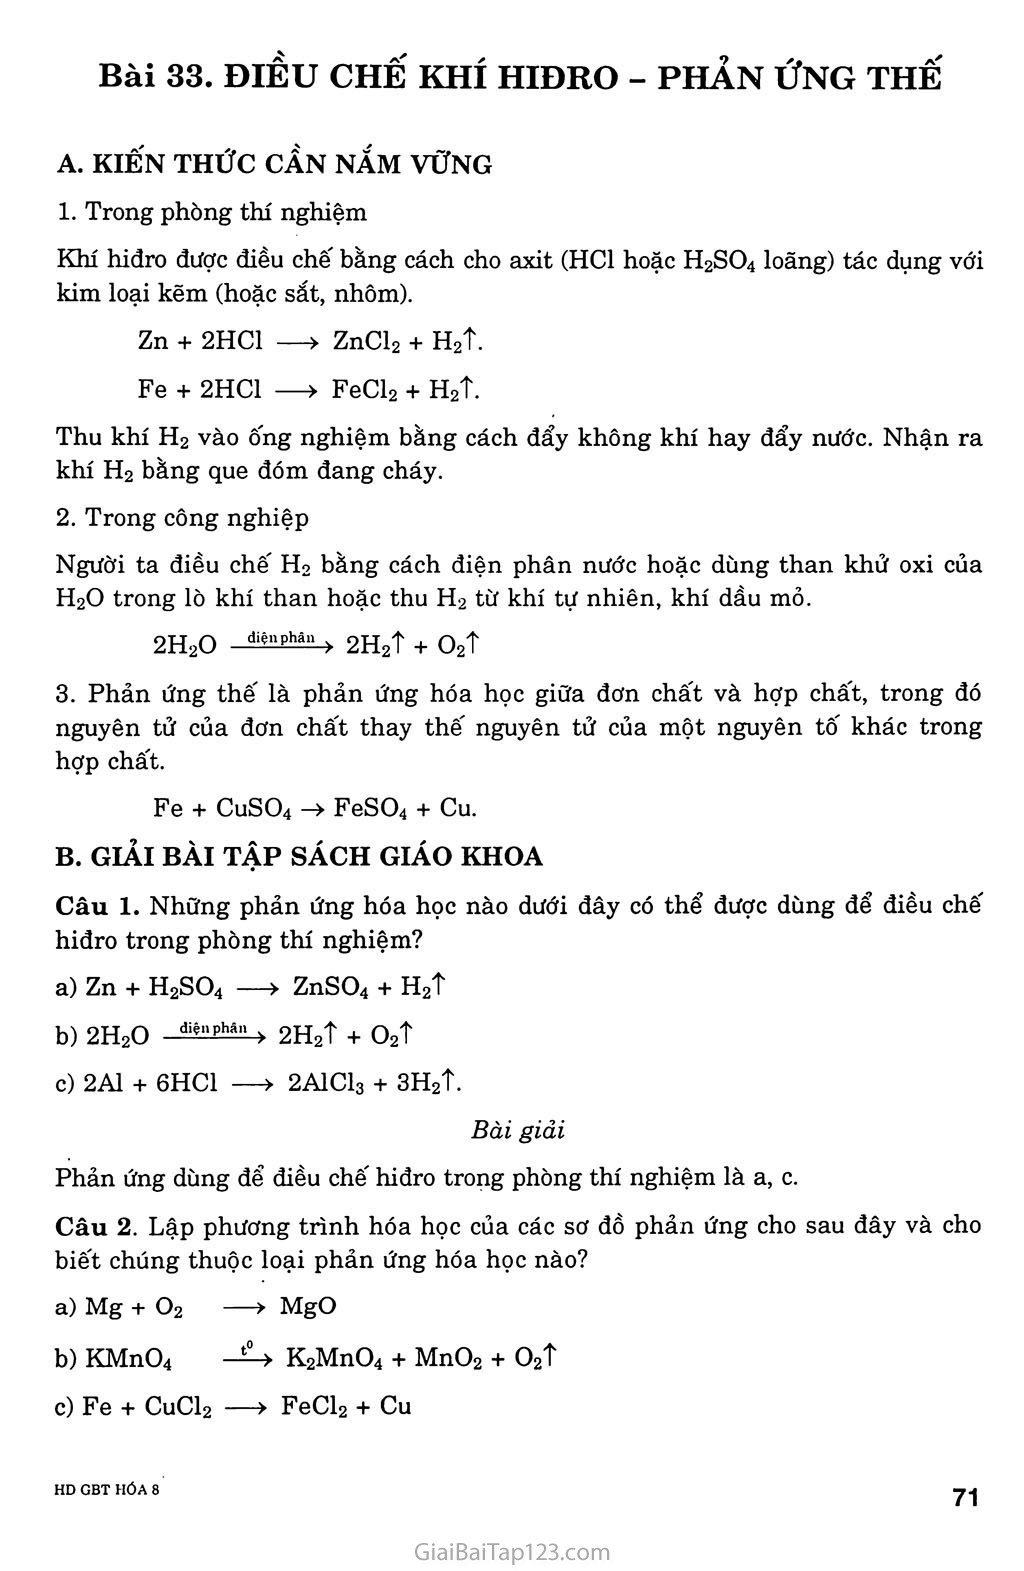 Bài 33: Điều chế khí hiđro - Phản ứng thế trang 1